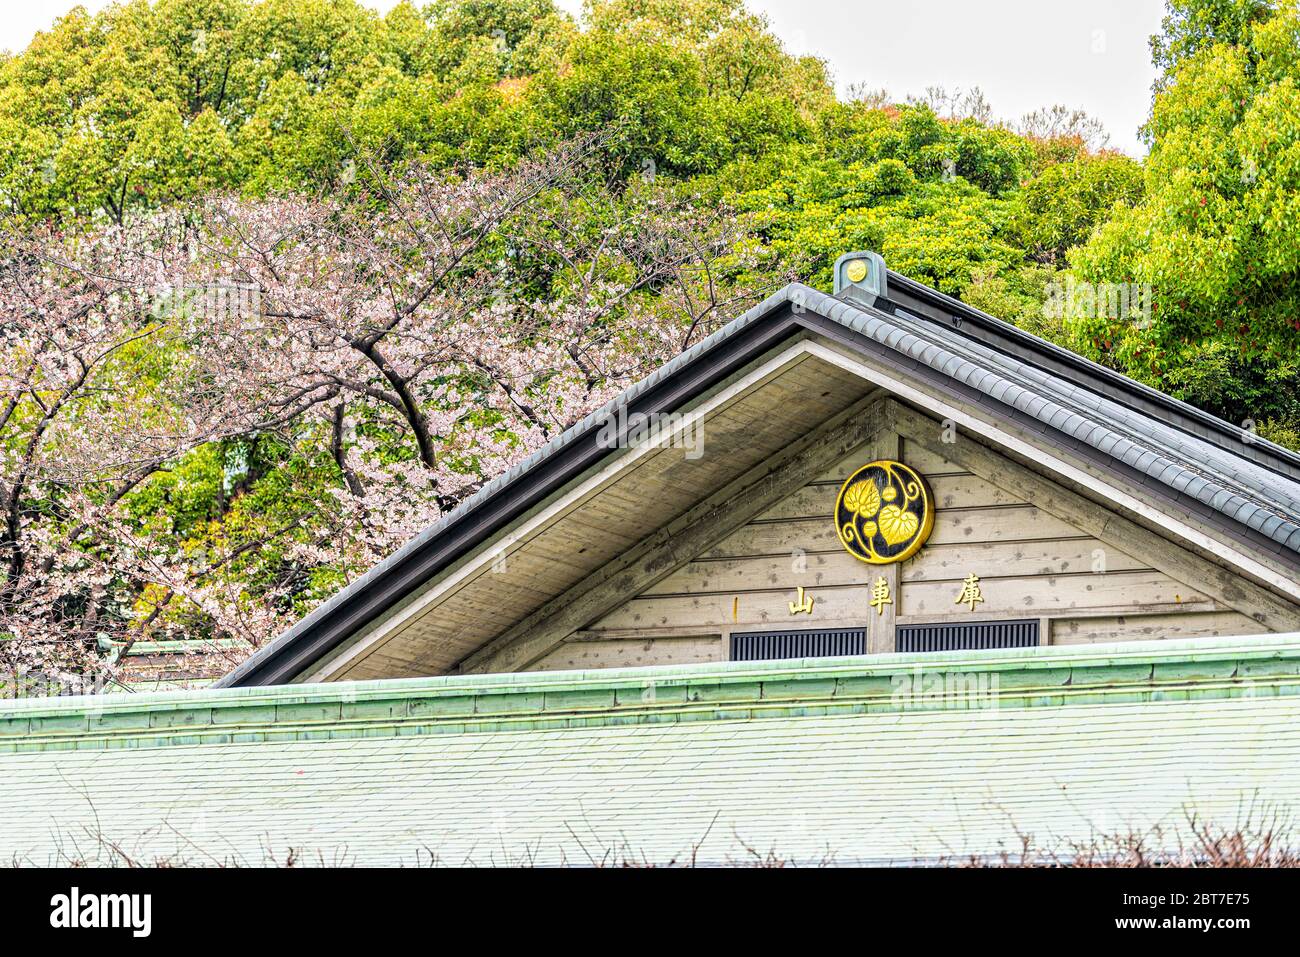 Tokio, Japan - 30. März 2019: Bau von Dachschild in Hie Schrein Tempelanlagen mit japanischer Architektur und Kirschblüten Bäume Stockfoto